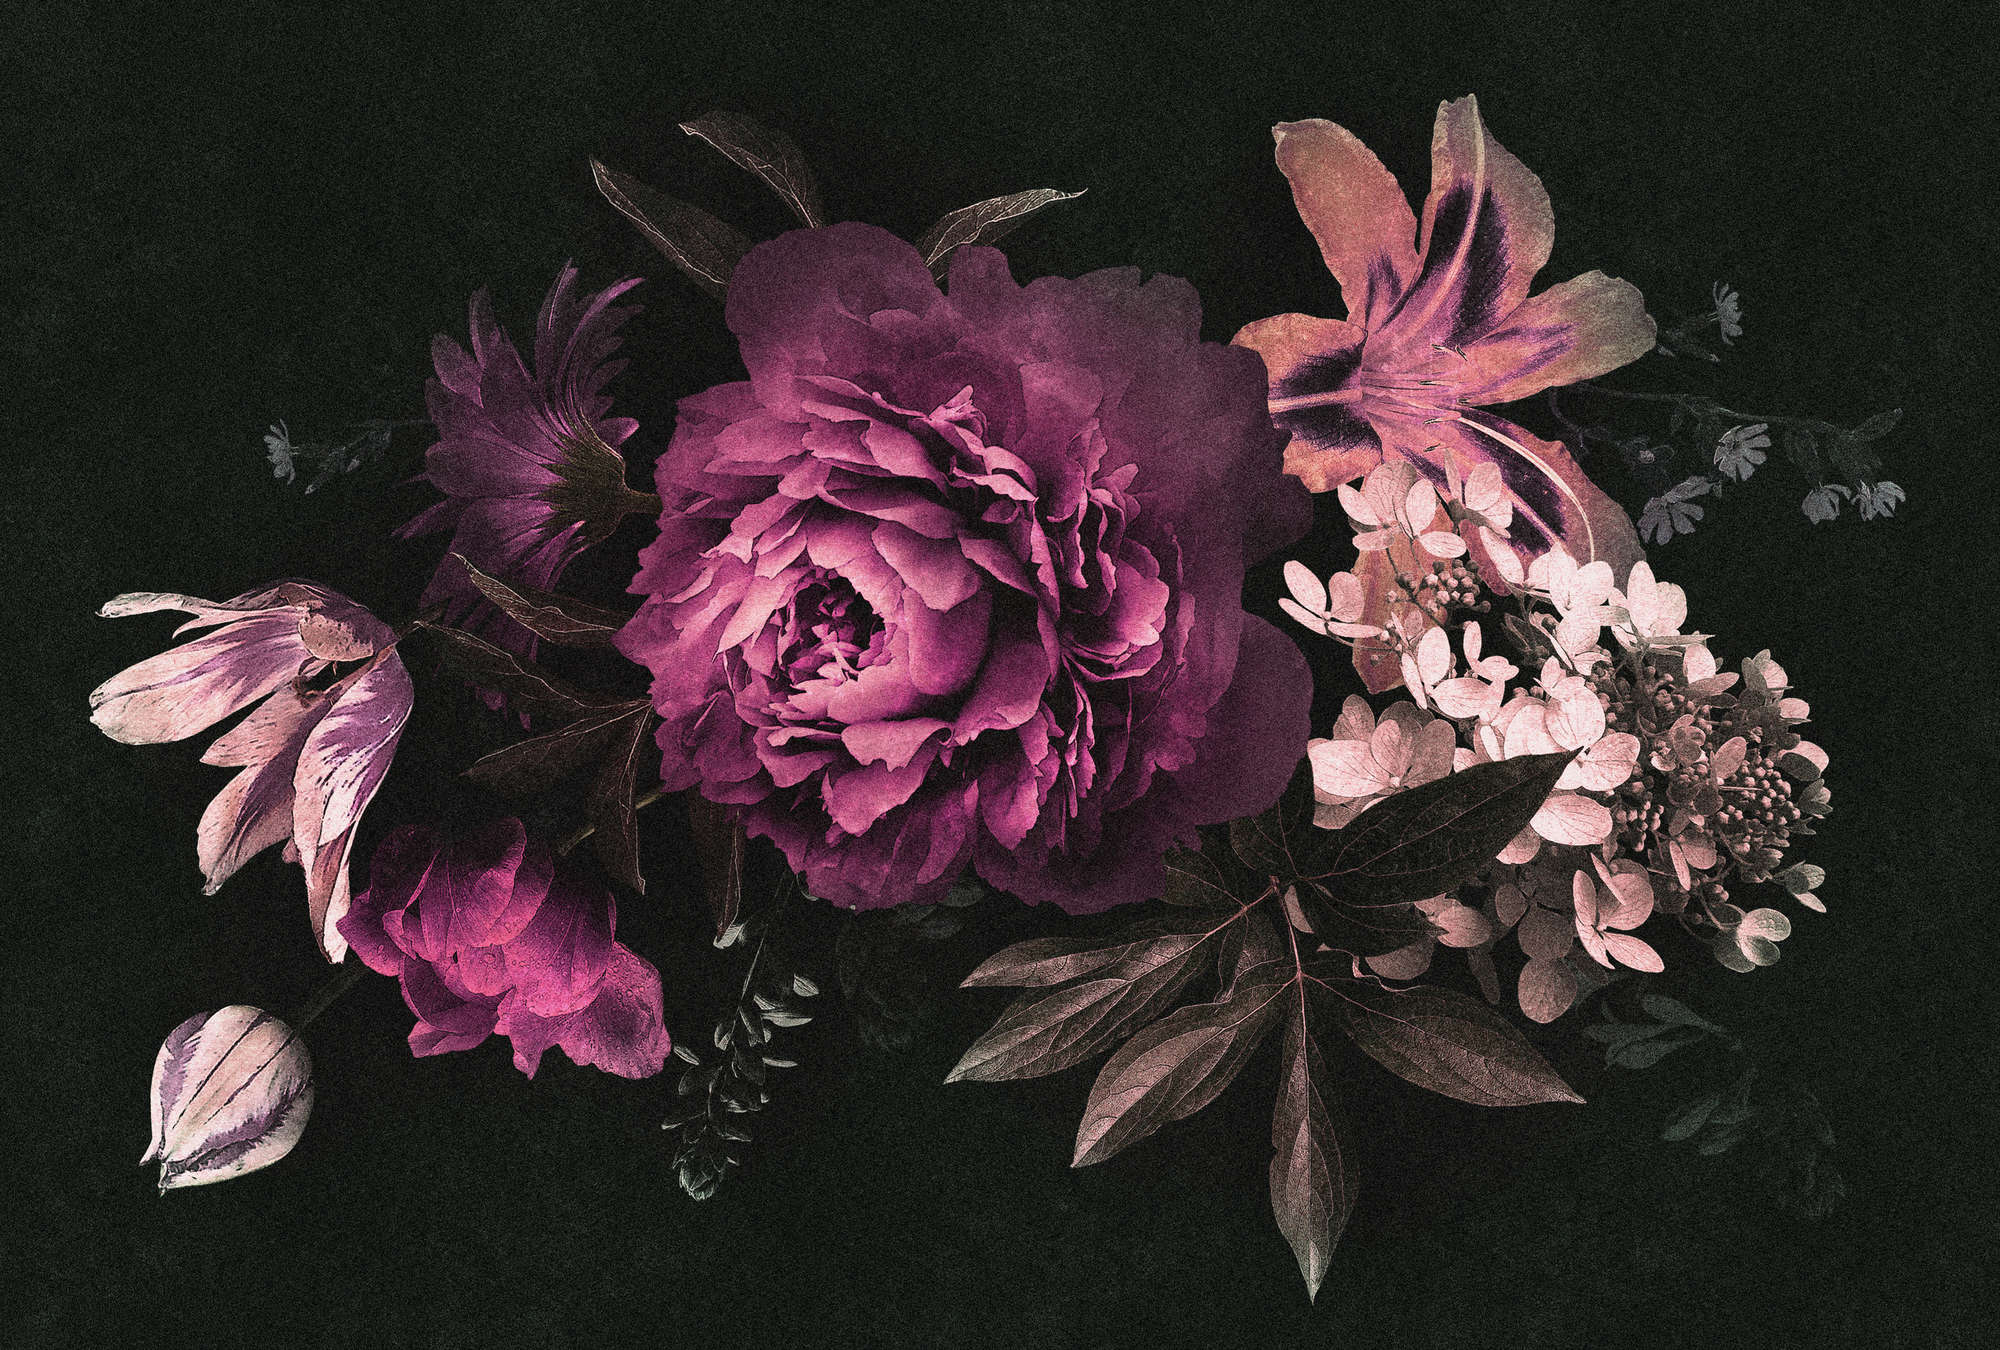             Drama queen 3 - Papier peint bouquet de fleurs romantique - structure en carton - rose, noir | Intissé lisse mat
        